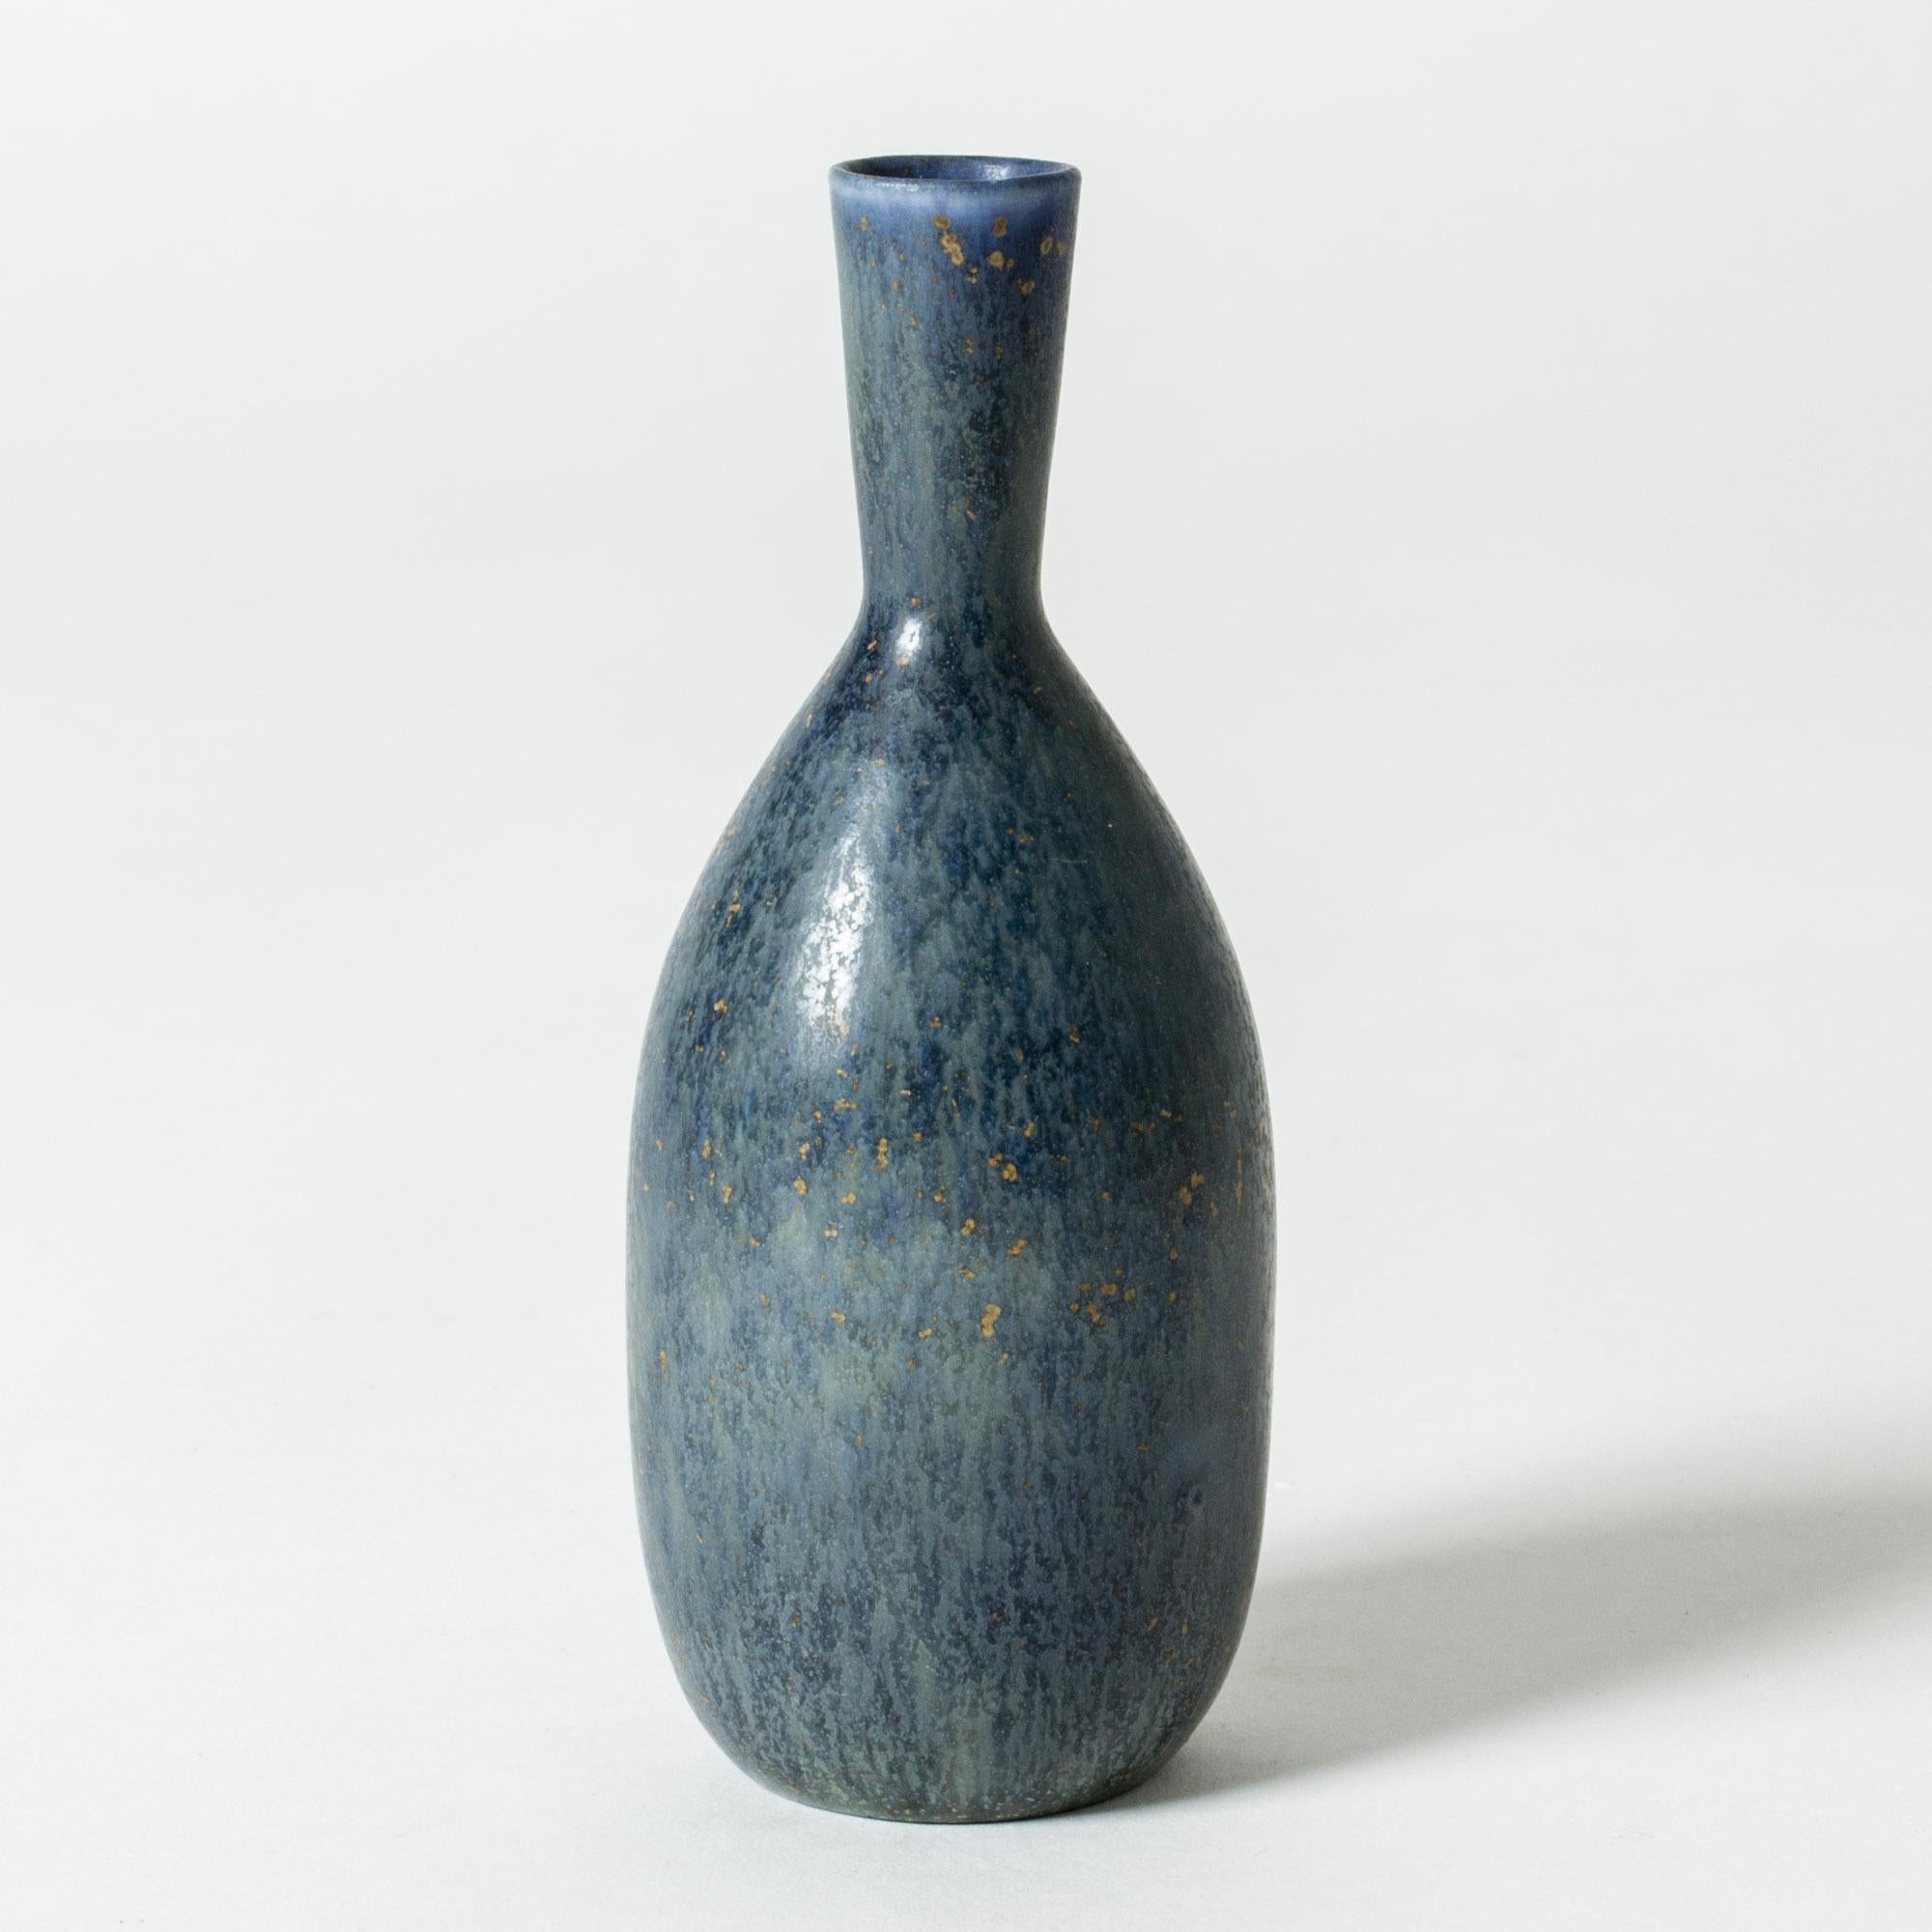 Magnifique vase en grès de Carl-Harry Stålhane de taille soignée et de forme épurée. Émail bleu acier avec des mouchetures de couleur qui ont un effet doré.